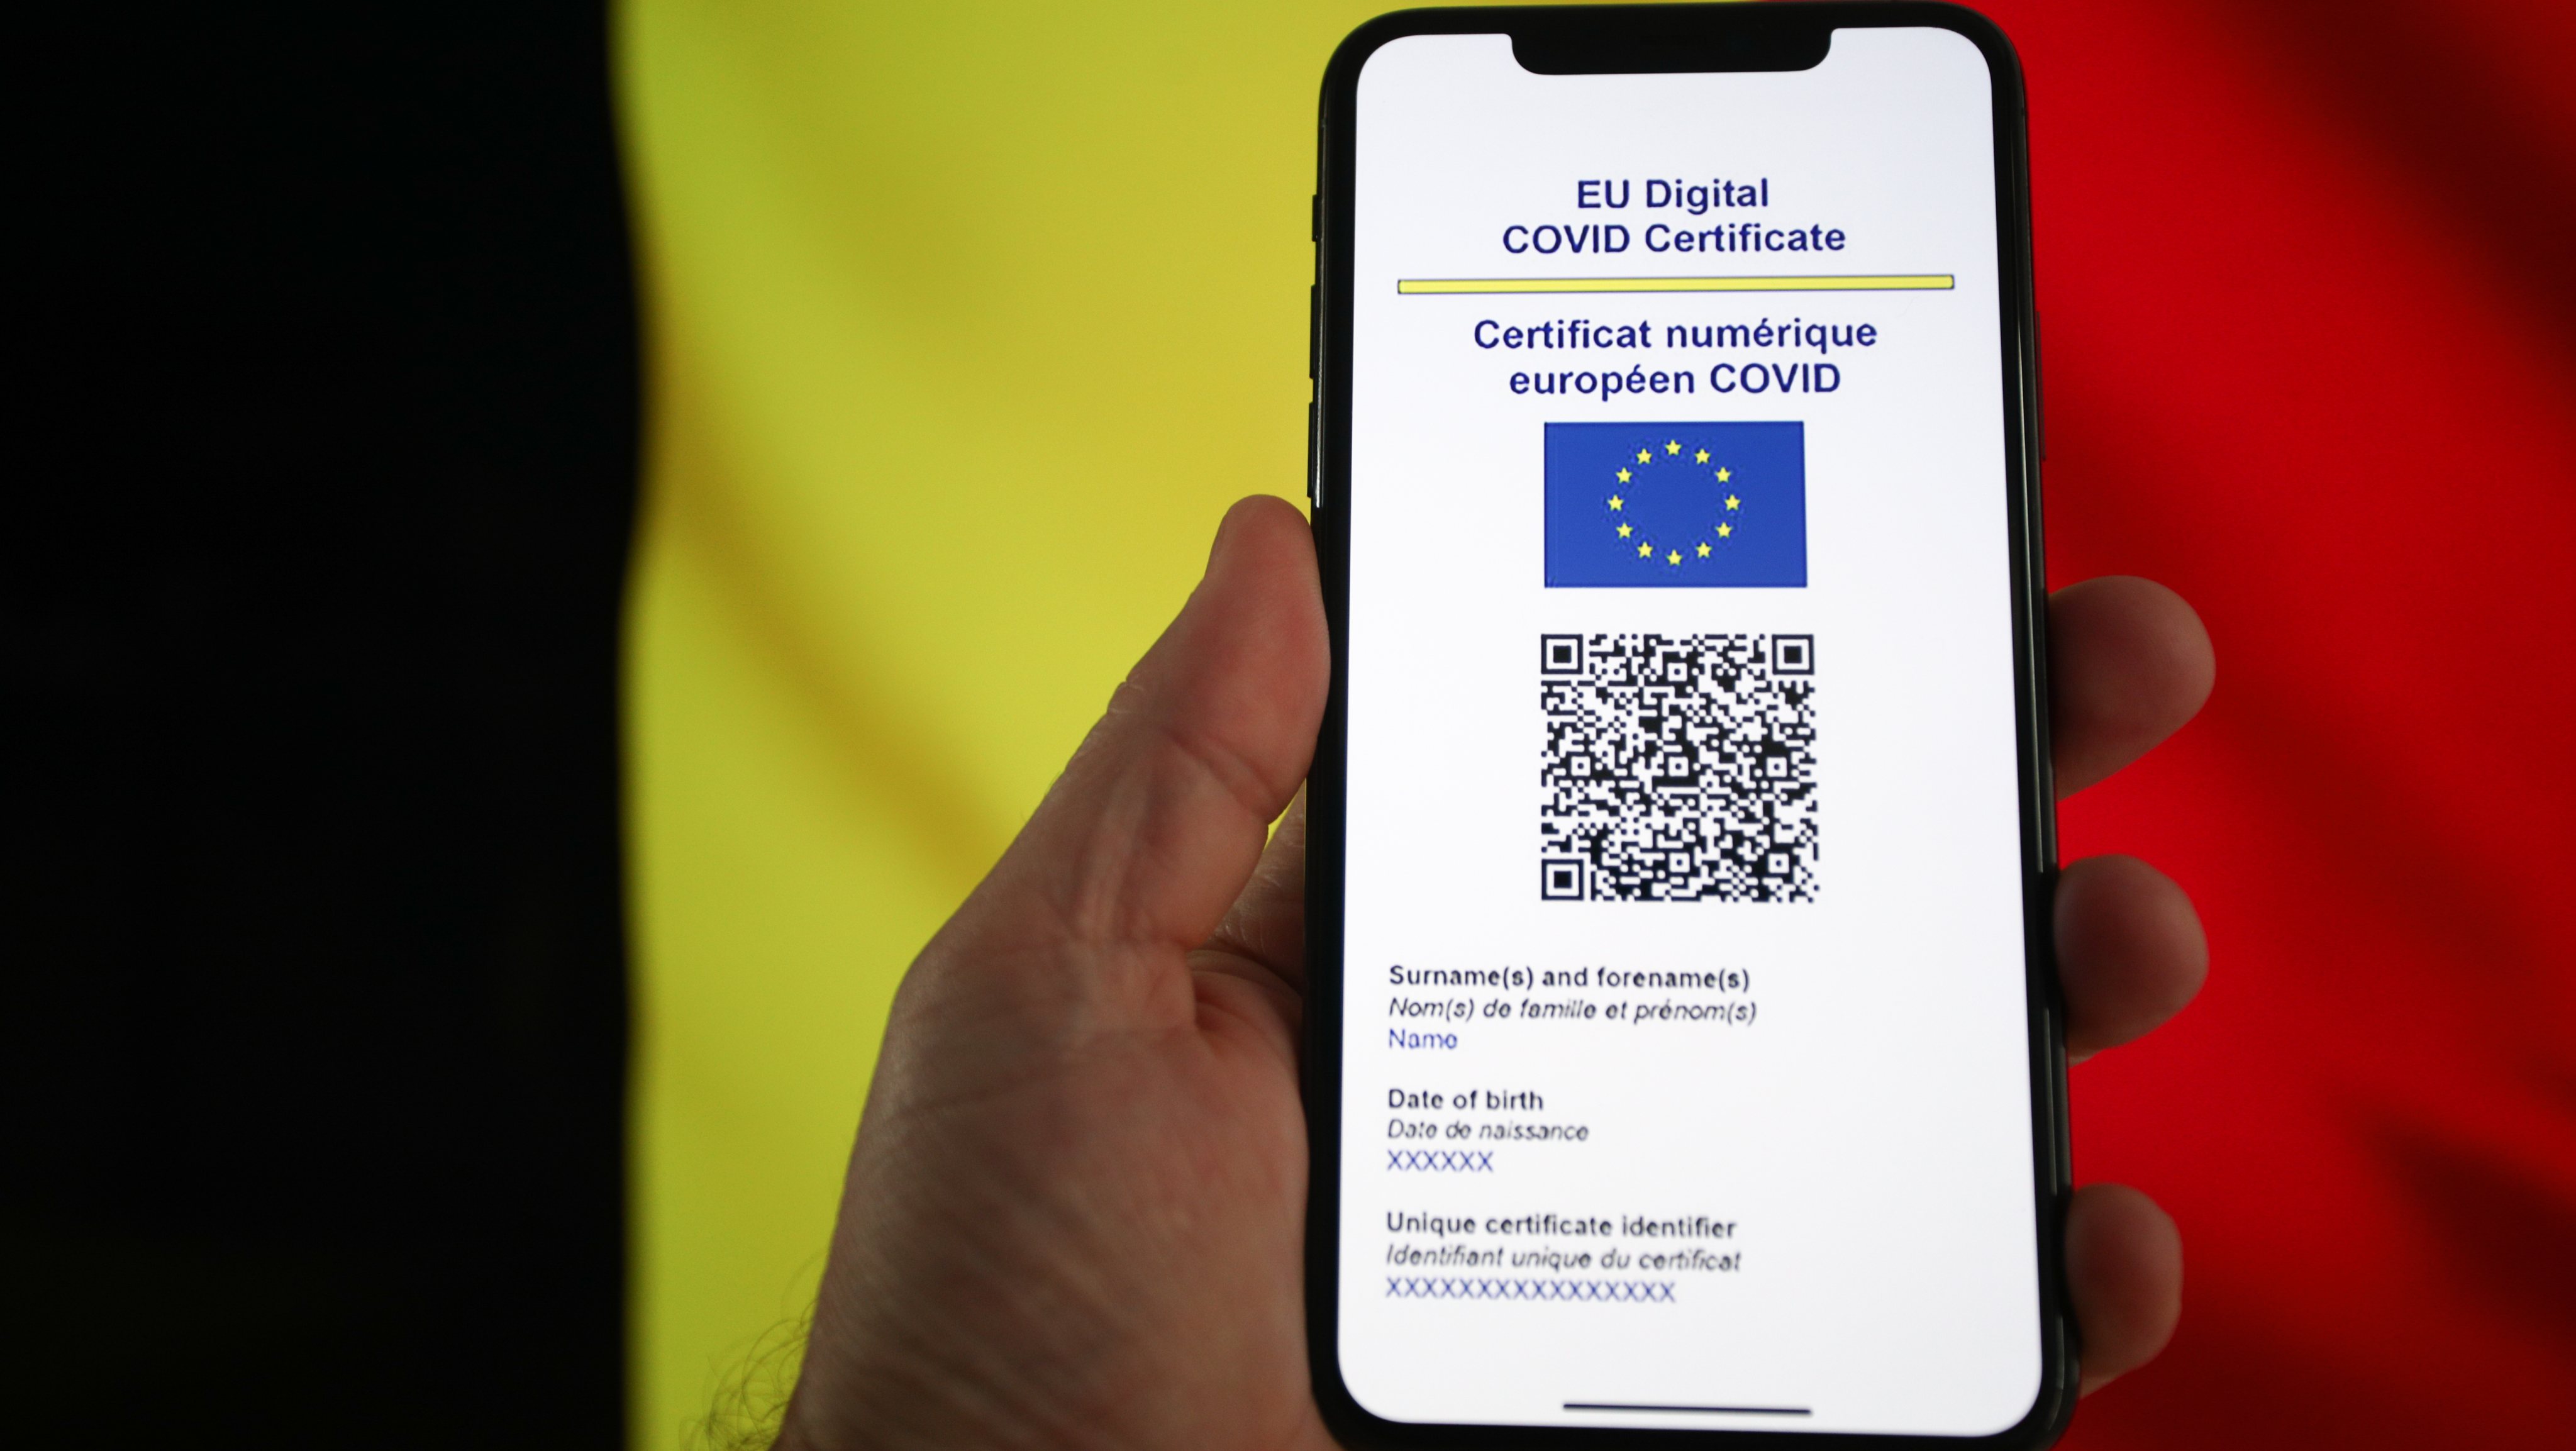 COVID Certificates In EU Starting July 1